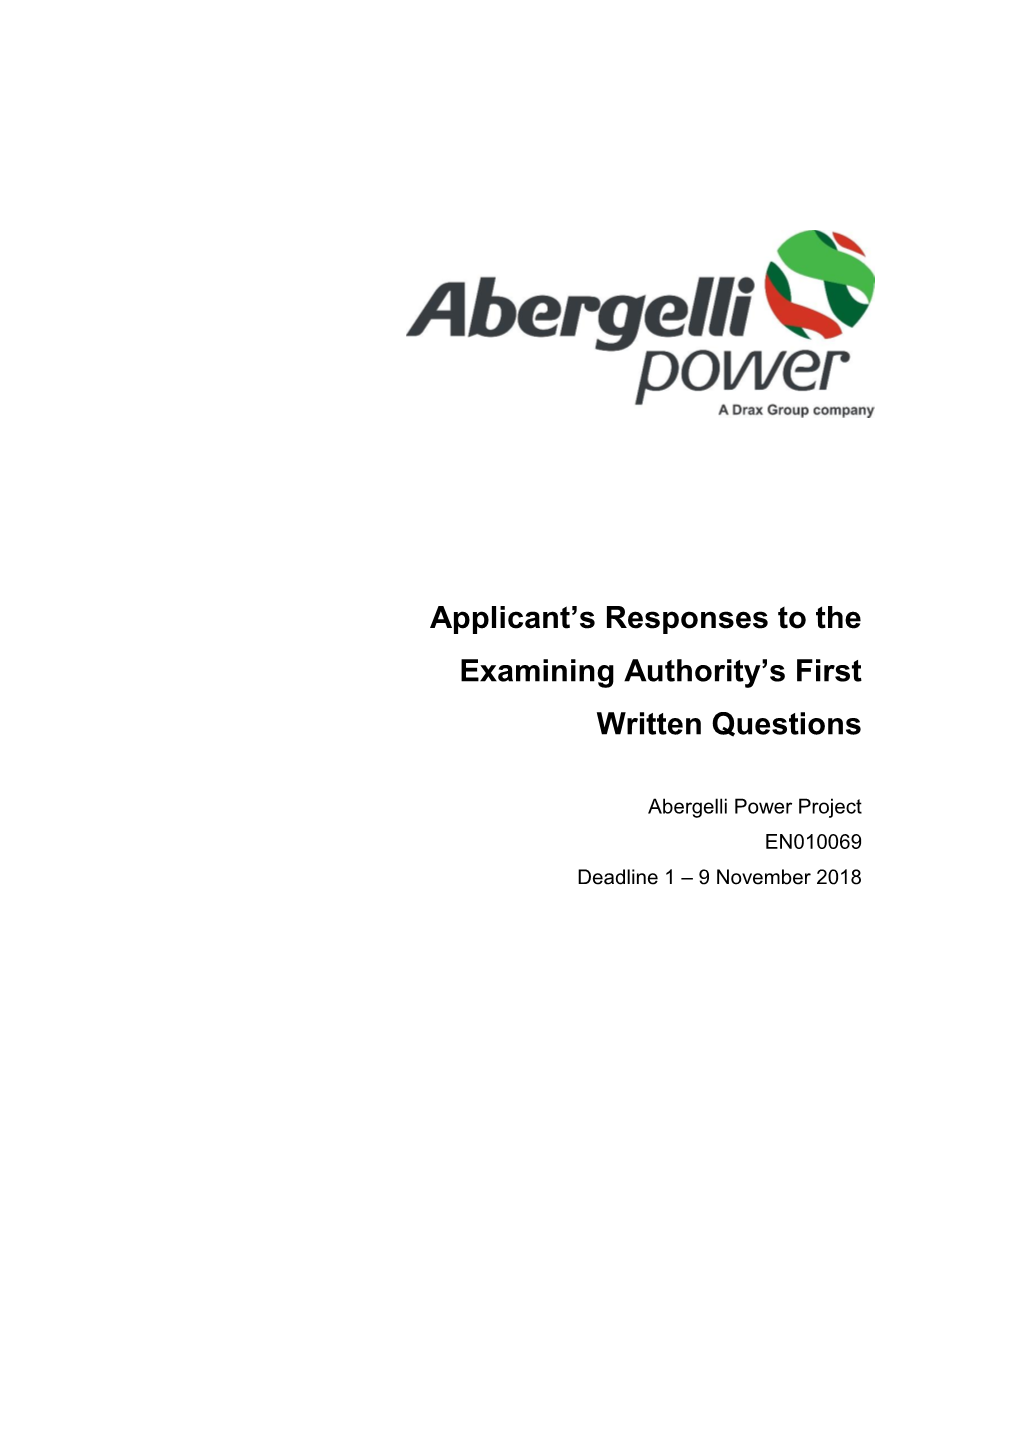 Abergelli Power Limited (APL)